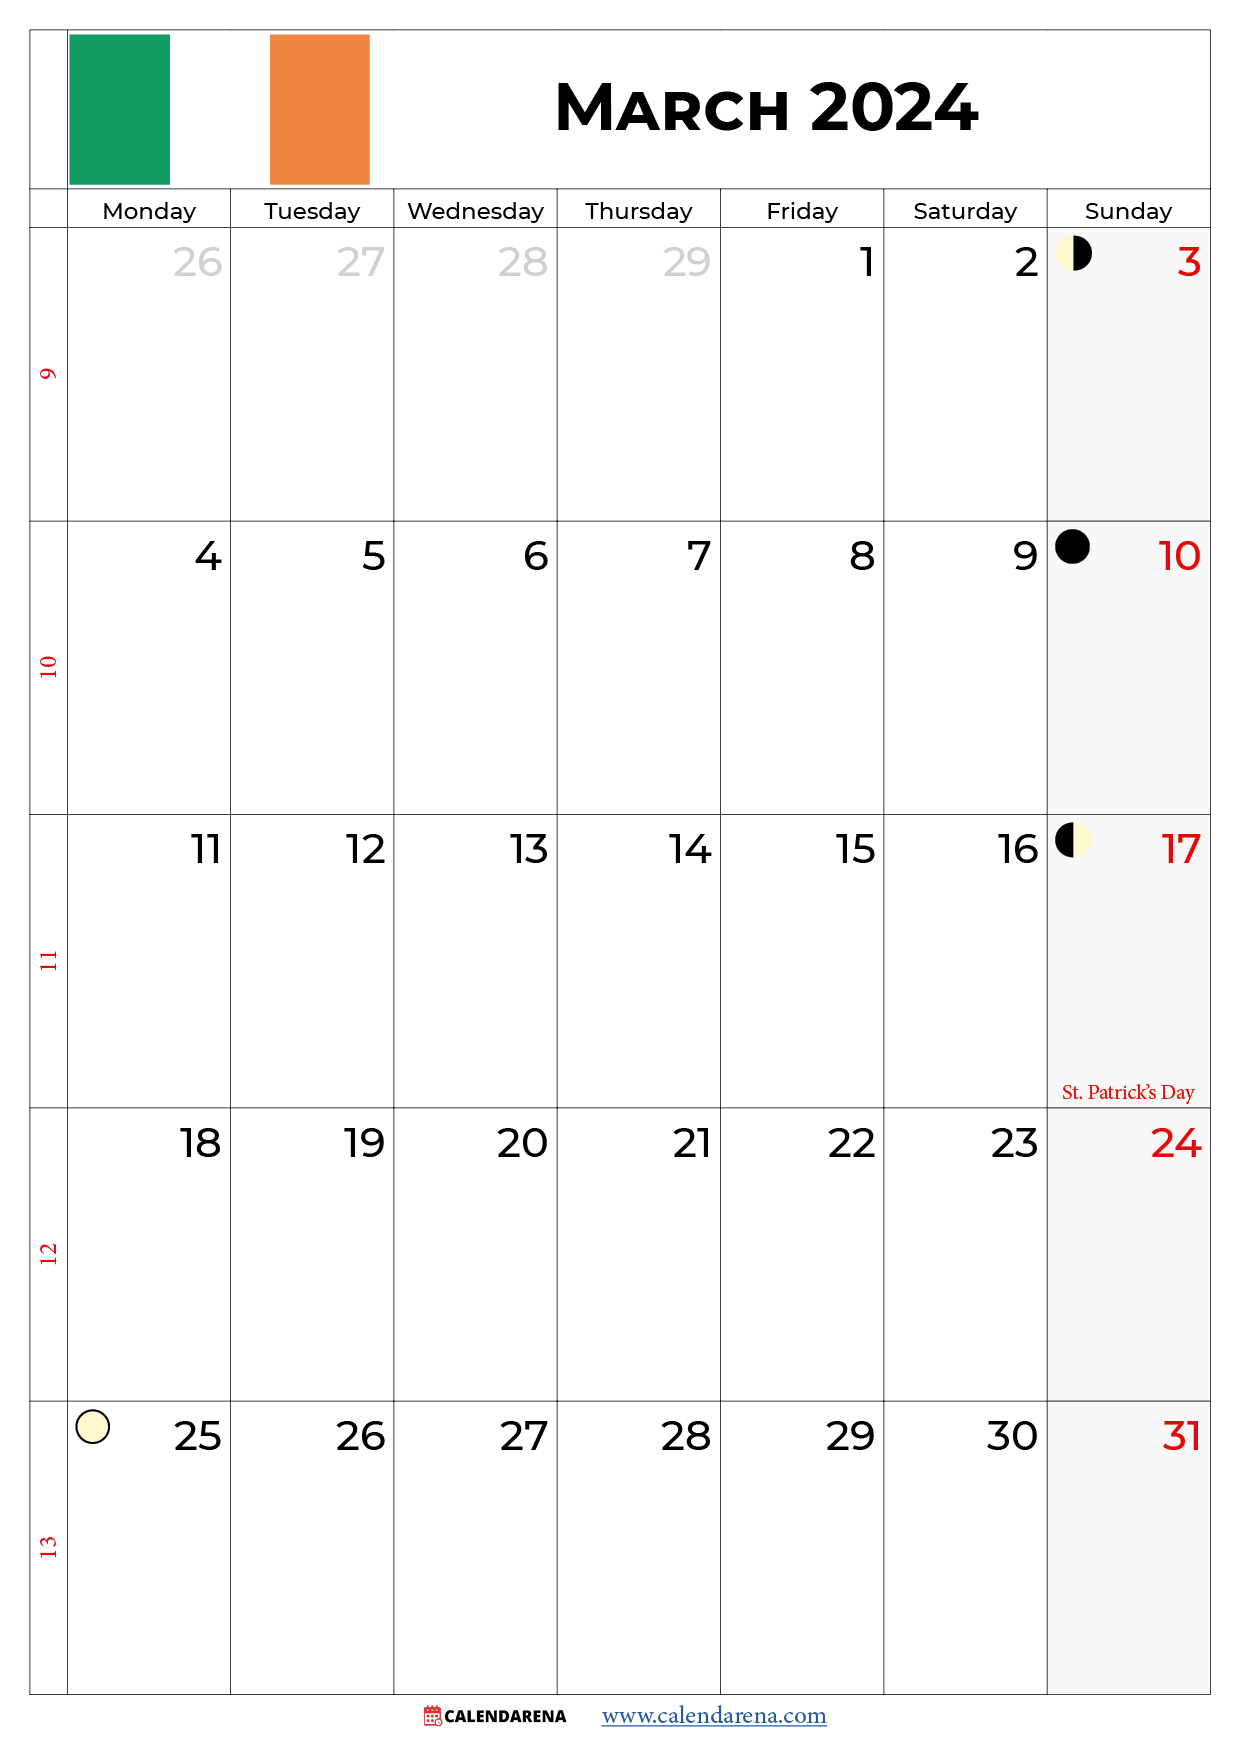 march 2024 calendar printable ireland